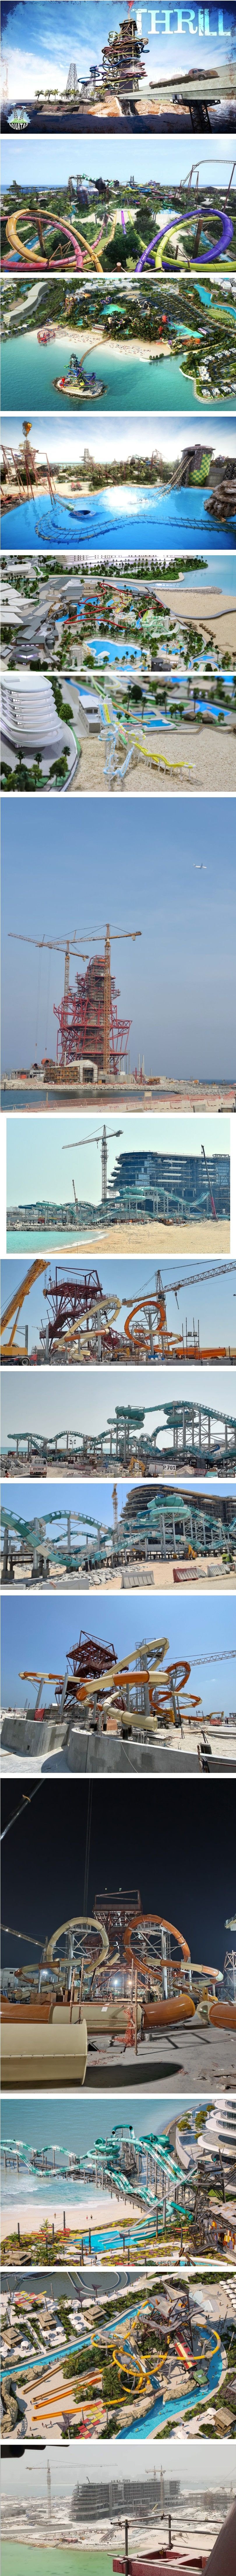 카타르에 건설중인 워터파크